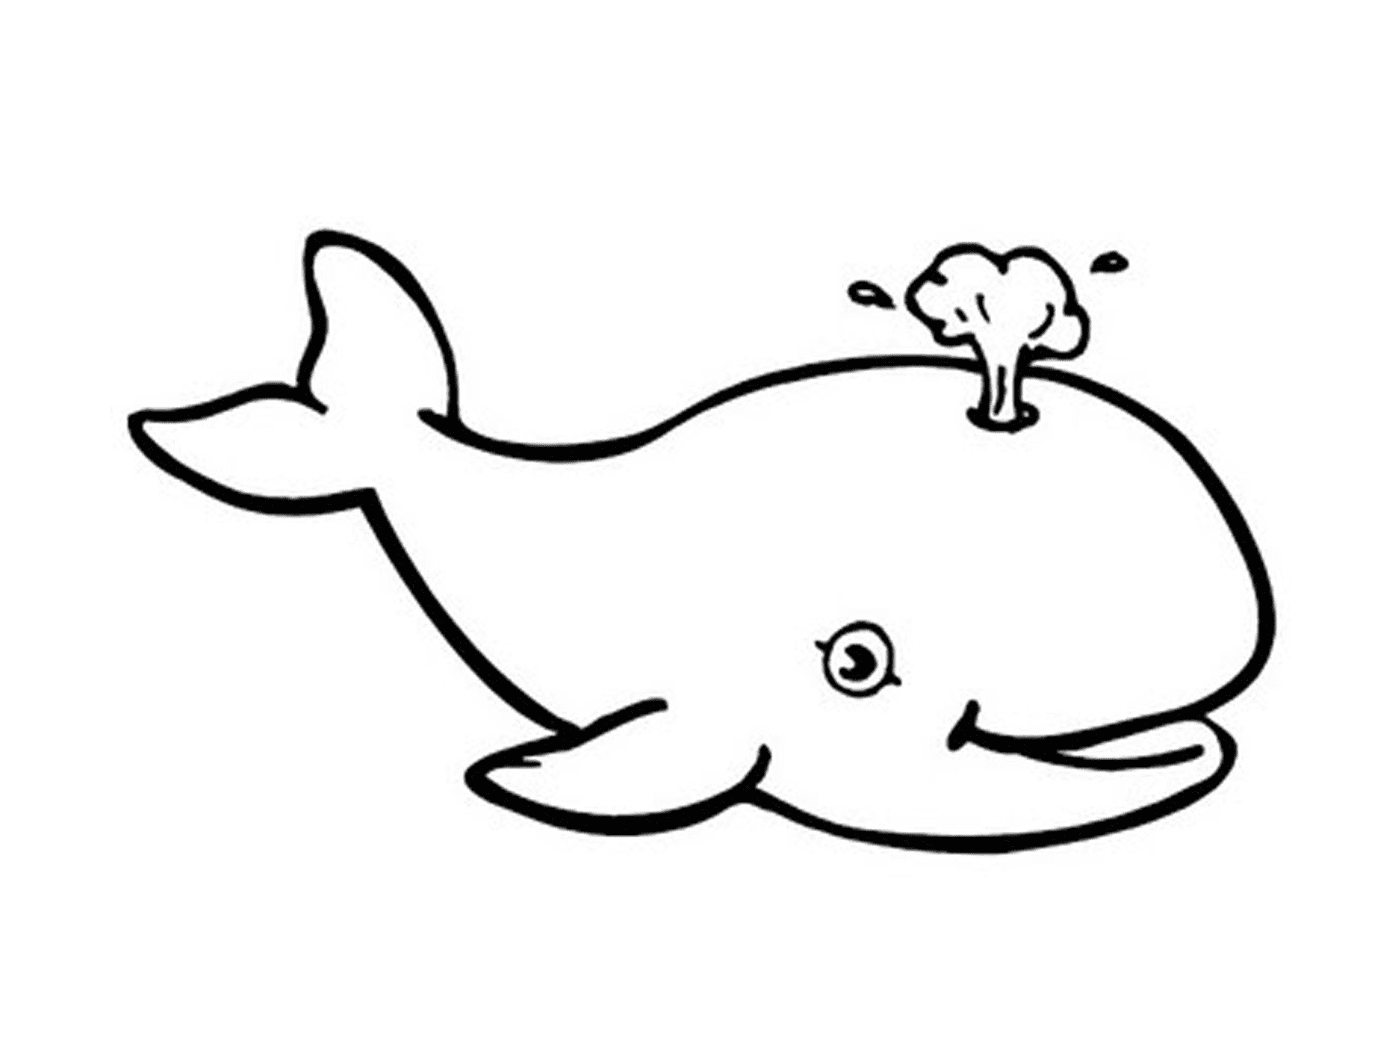  кит с брызгой из головы 